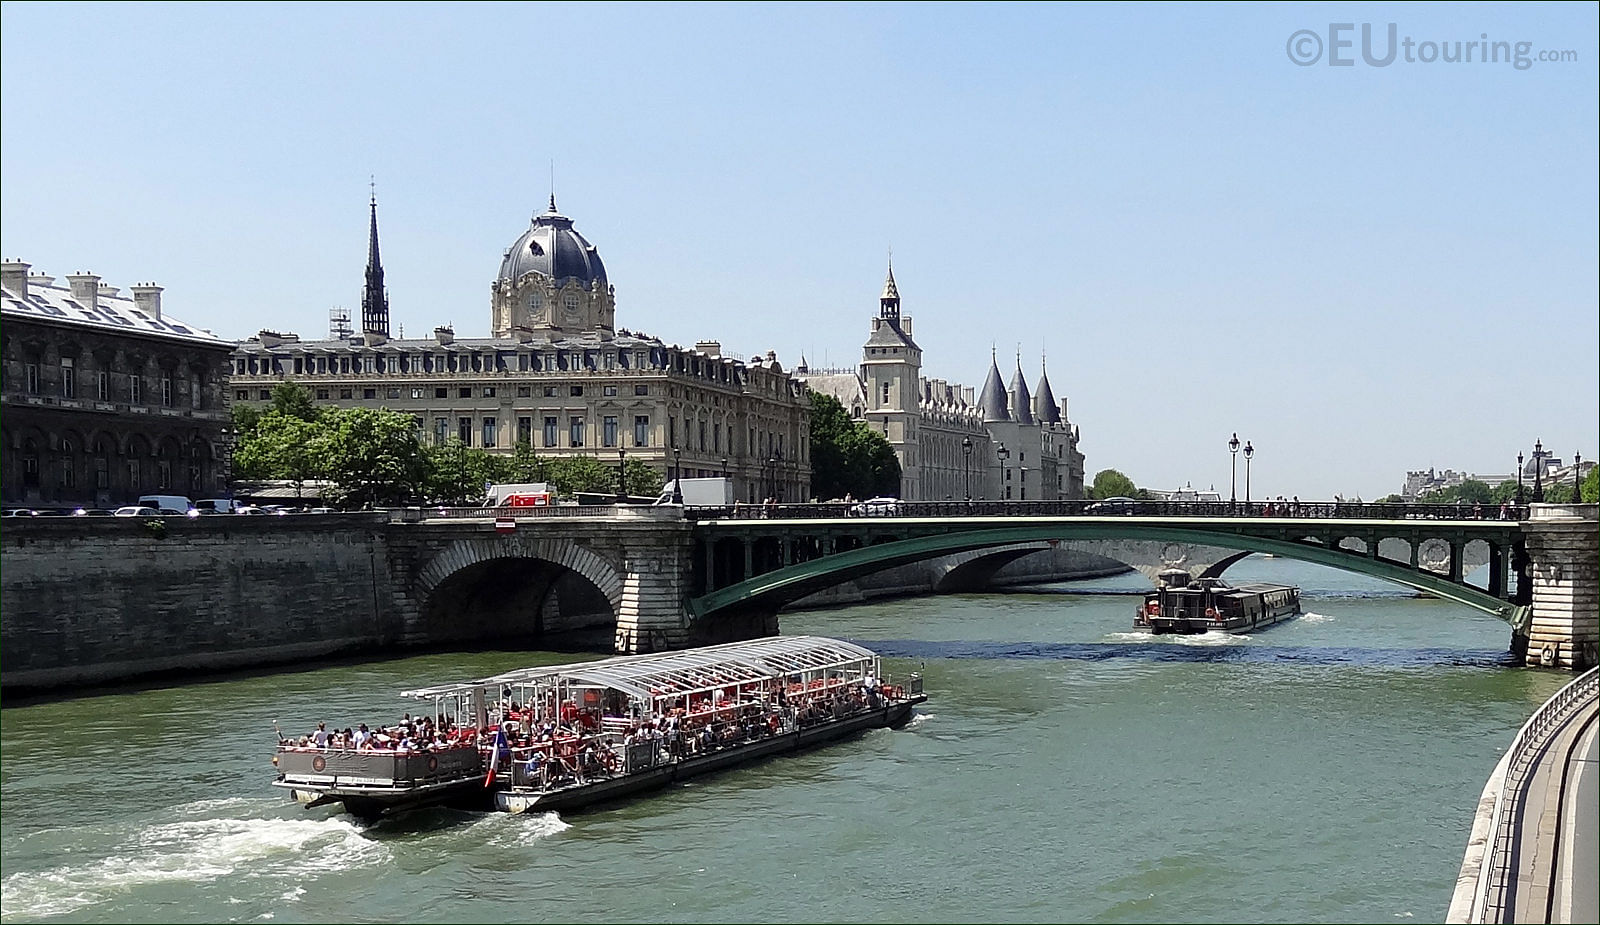 paris pass river cruise